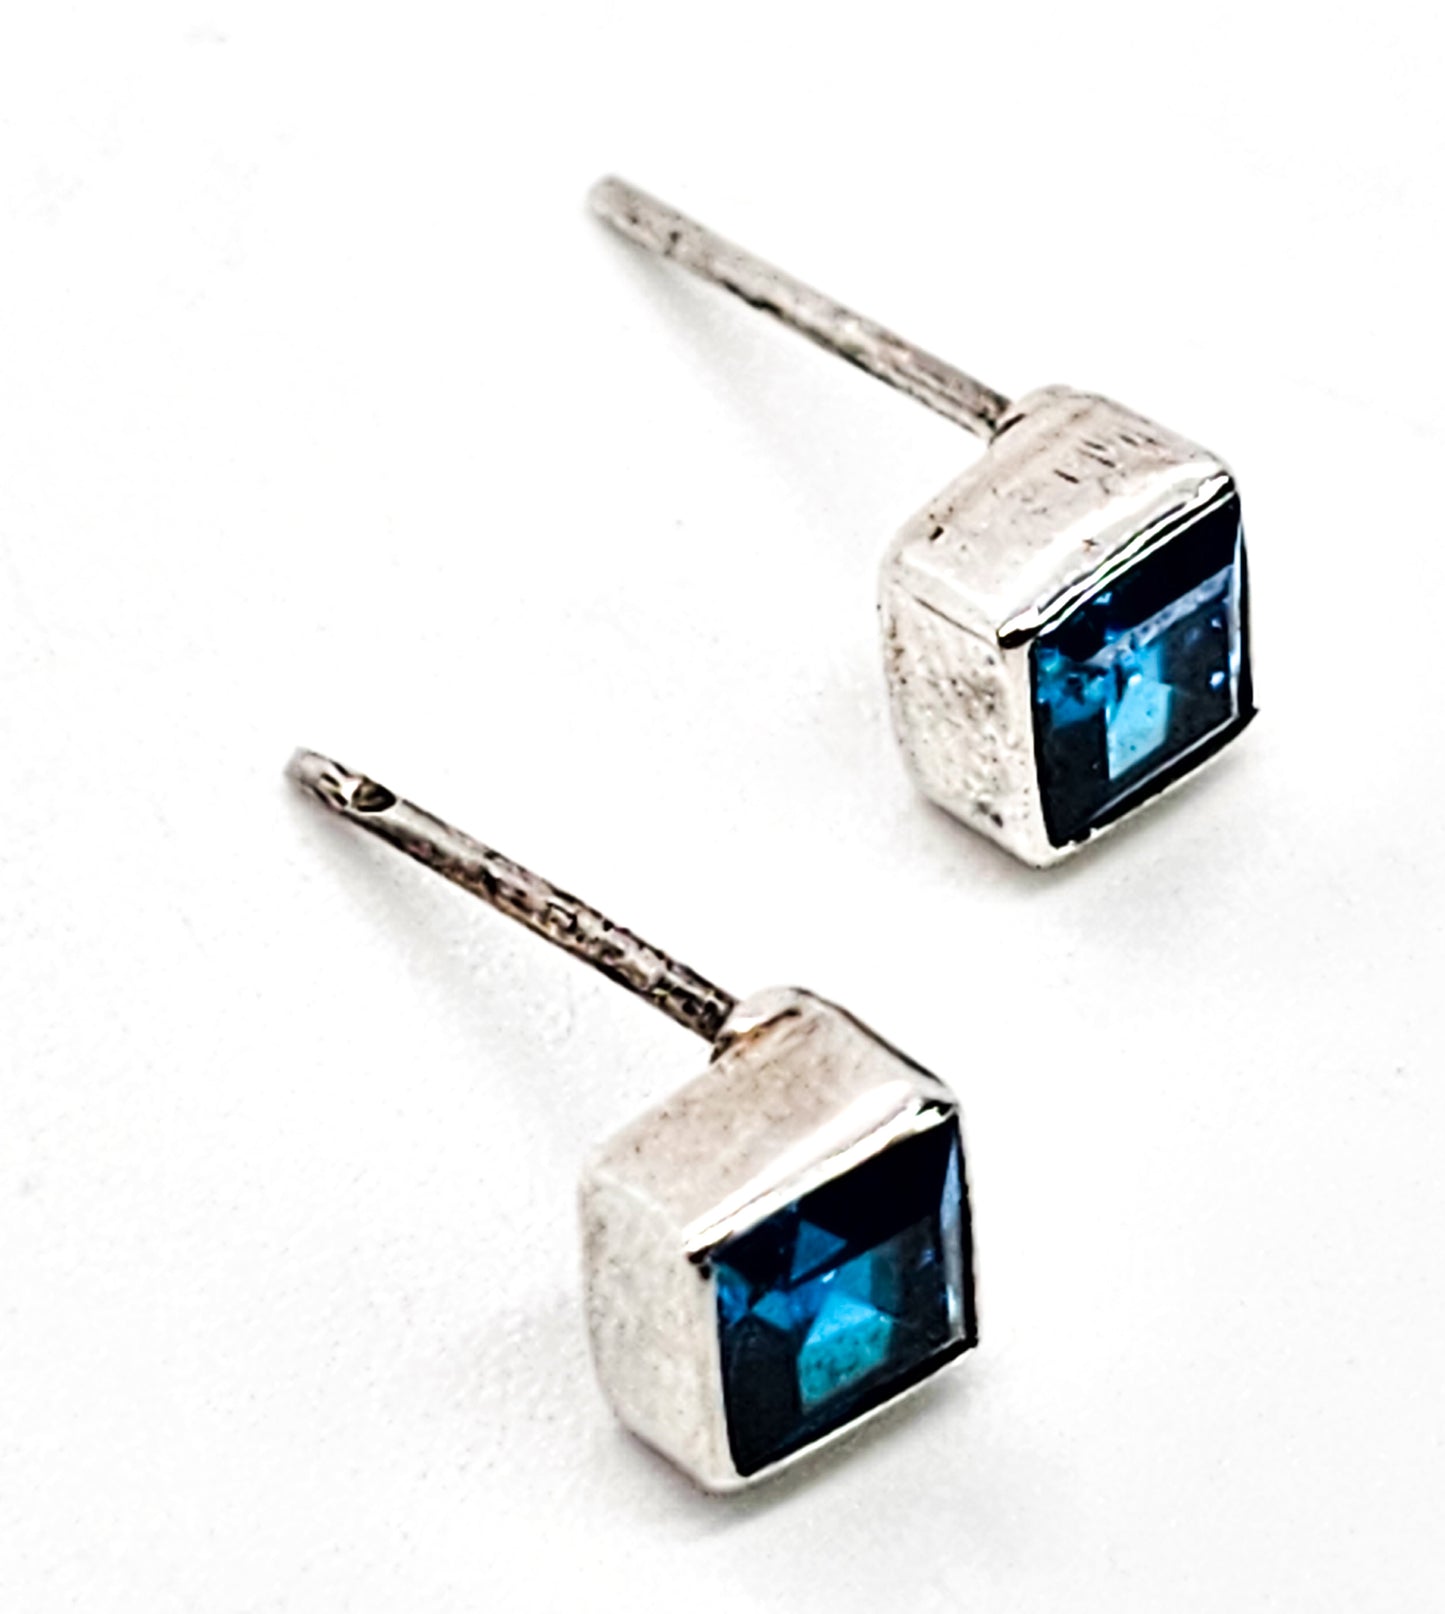 Blue topaz princess cut sterling silver stud earrings